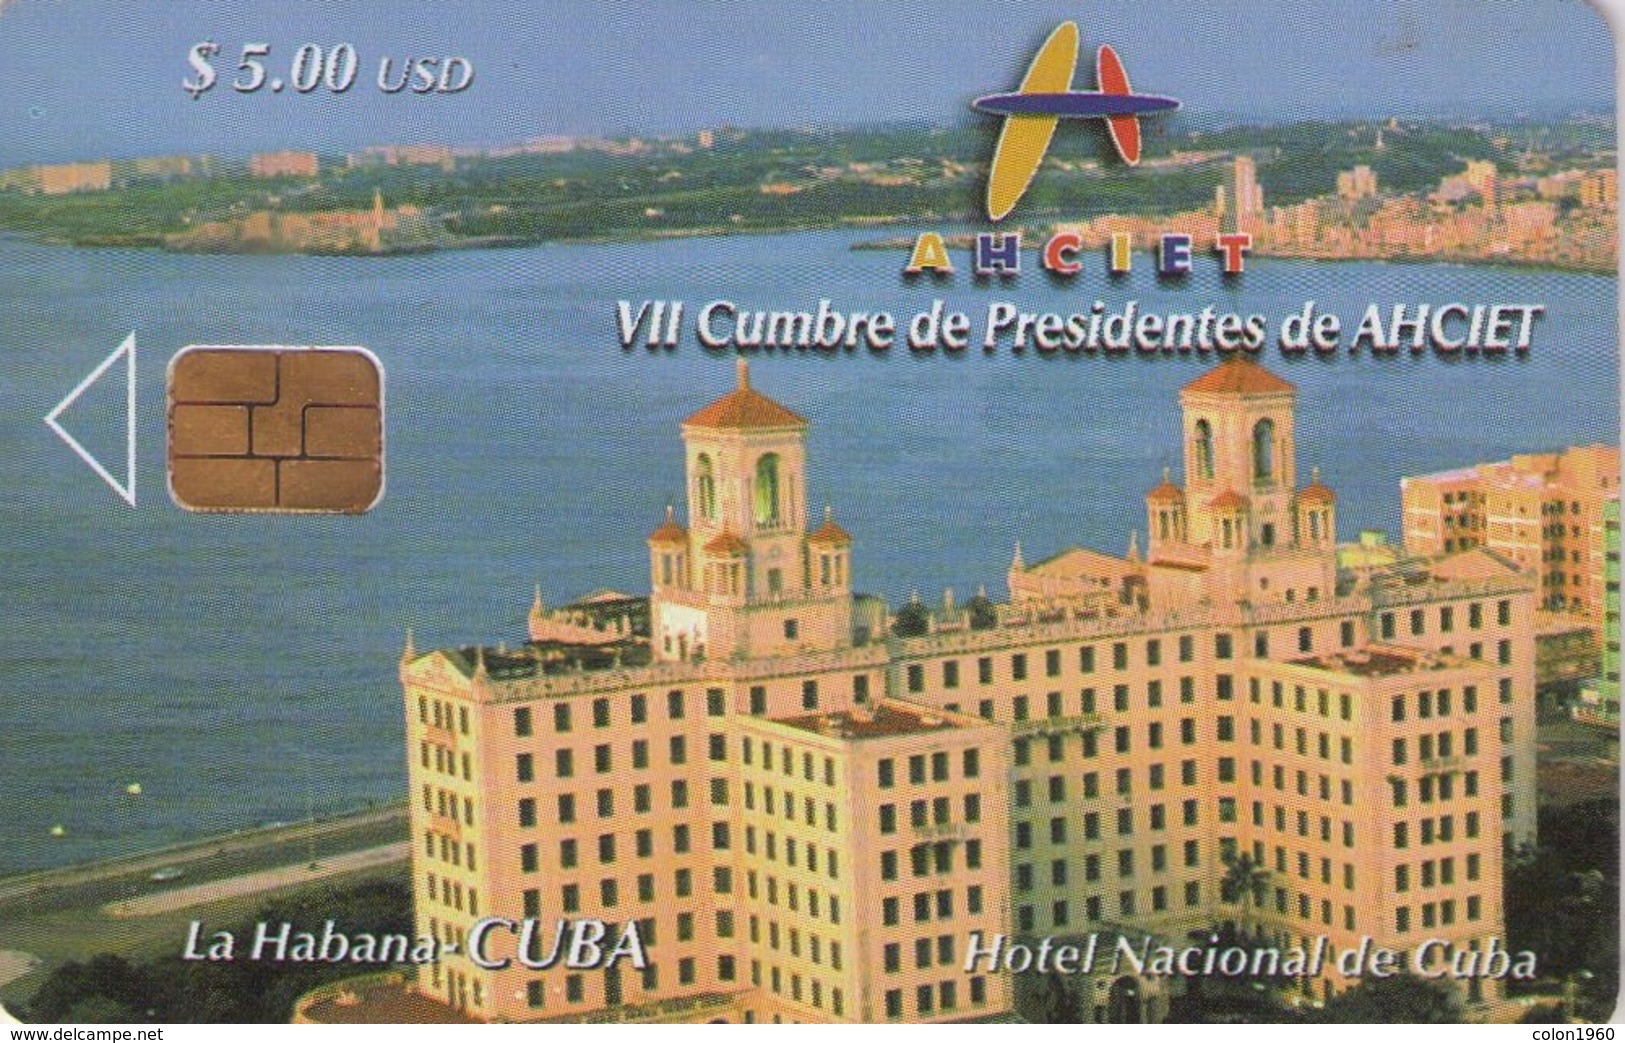 CUBA. National Hotel Of Cuba 2 Ahciet. 2003-11. 30000 Ex. CU-184. (429) - Cuba